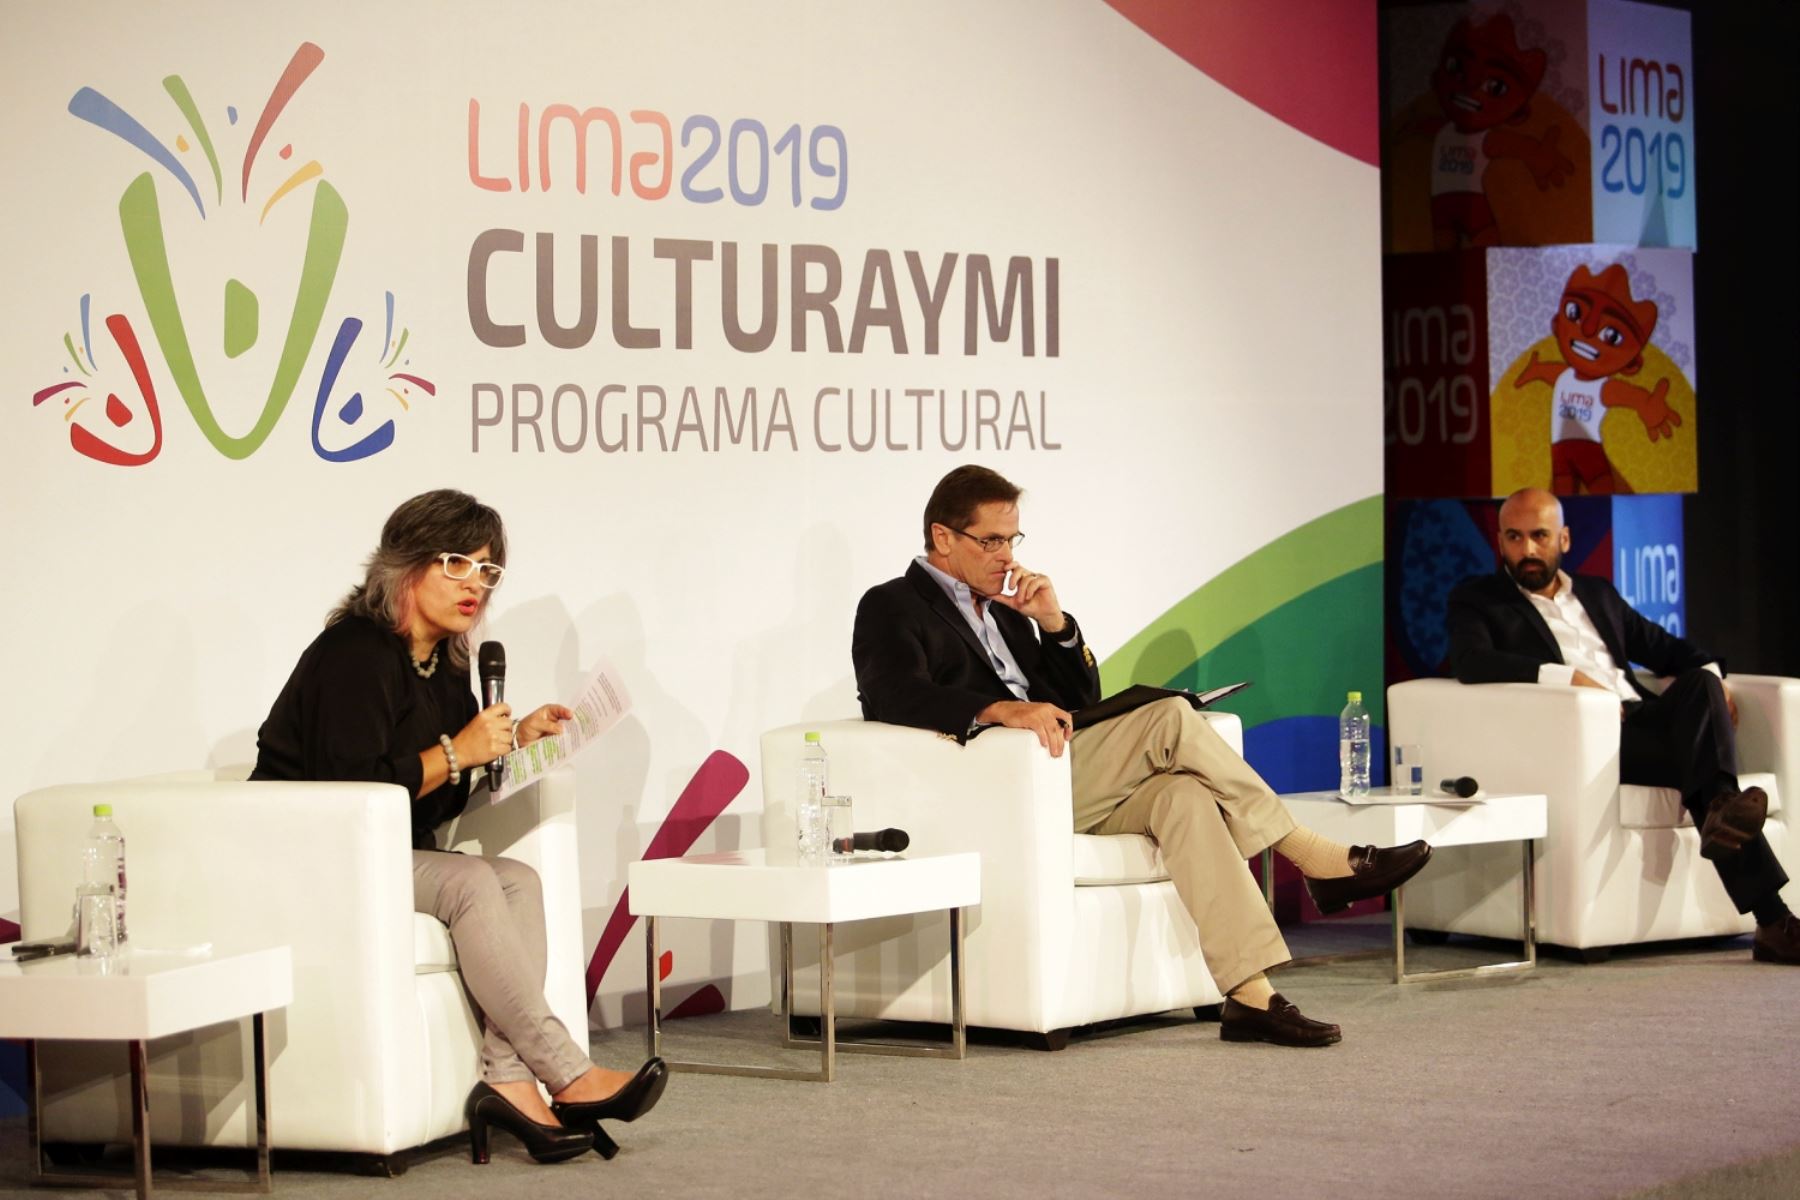 Ministra de Cultura, Ulla Holmquist Pachas, participó en la presentación del Programa Cultural Lima 2019, “Culturaymi”, junto a Carlos Neuhaus , presidente de la Comisión Organizadora de los Juegos Panamericanos de Lima 2019 (Copal).